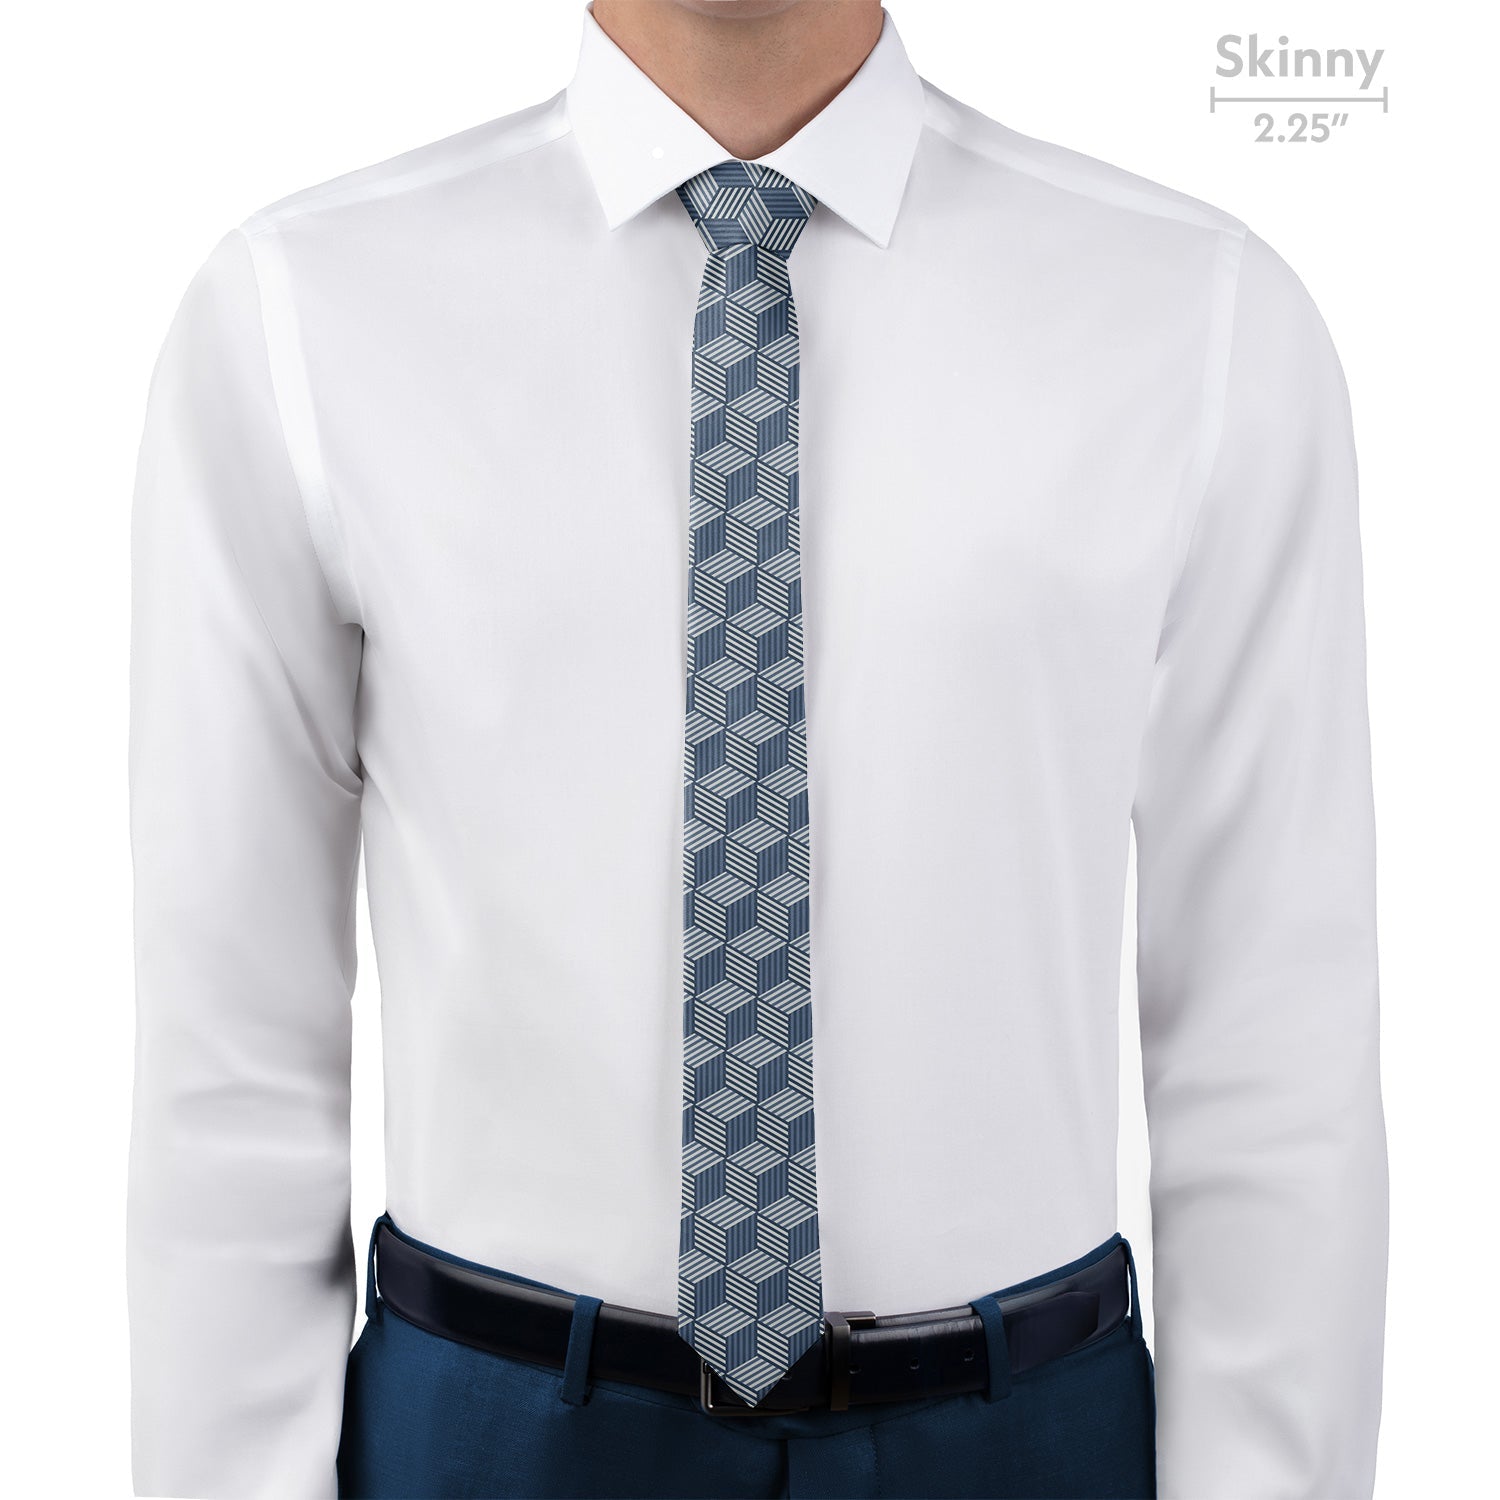 Hexagon Wild Necktie - Skinny 2.25" -  - Knotty Tie Co.